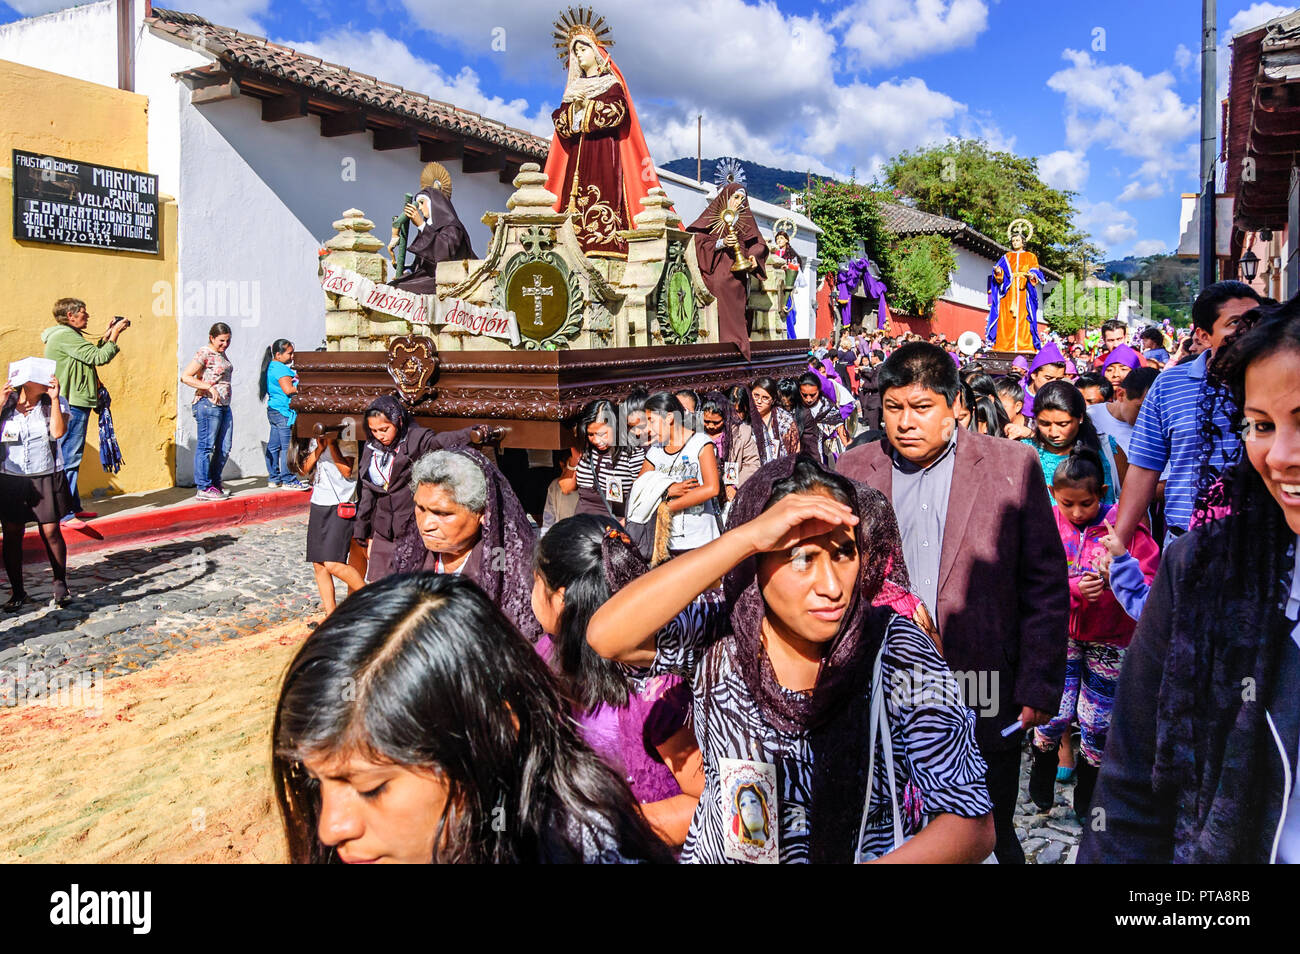 Antigua, Guatemala - Mar 1, 2015 : carême procession en site du patrimoine mondial de l'UNESCO avec les plus célèbres célébrations de la Semaine Sainte en Amérique latine. Banque D'Images